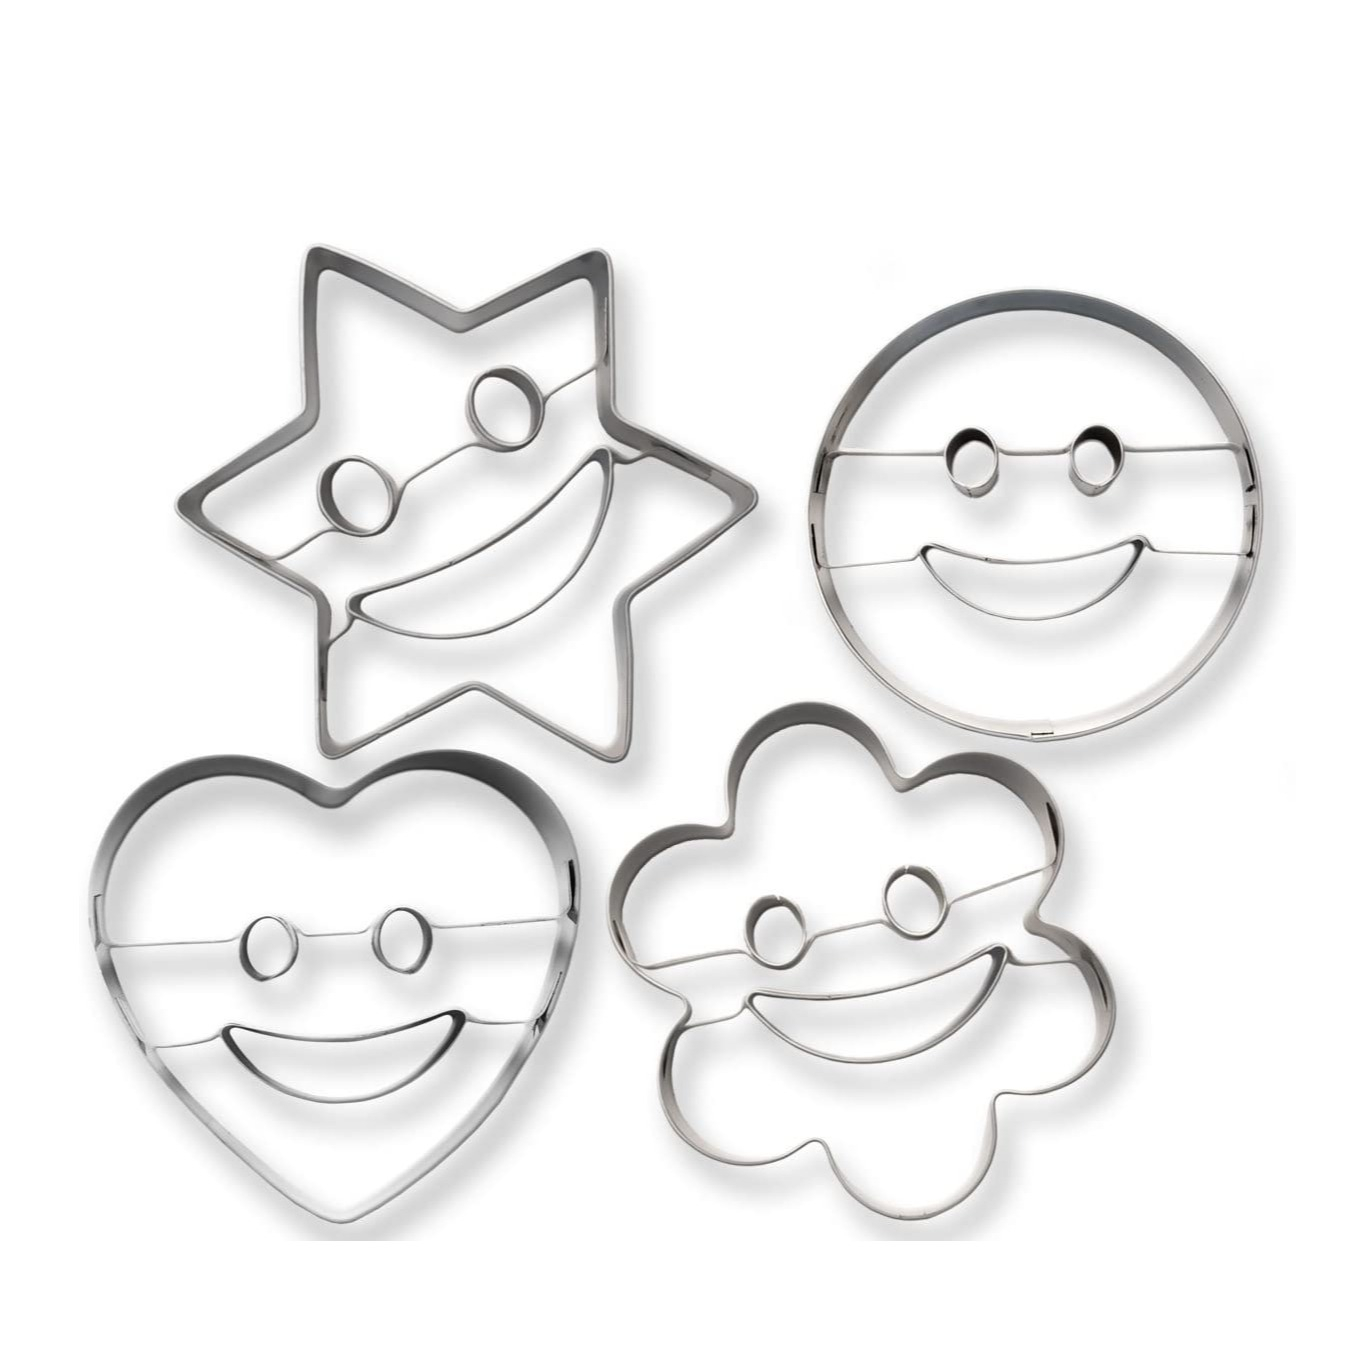 Image of (4er Set) Edelstahl Smiley Ausstechform Emoji Kuchenform Keksausstecher - Herz / Stern / Kreis / Blume bei Apfelkiste.ch